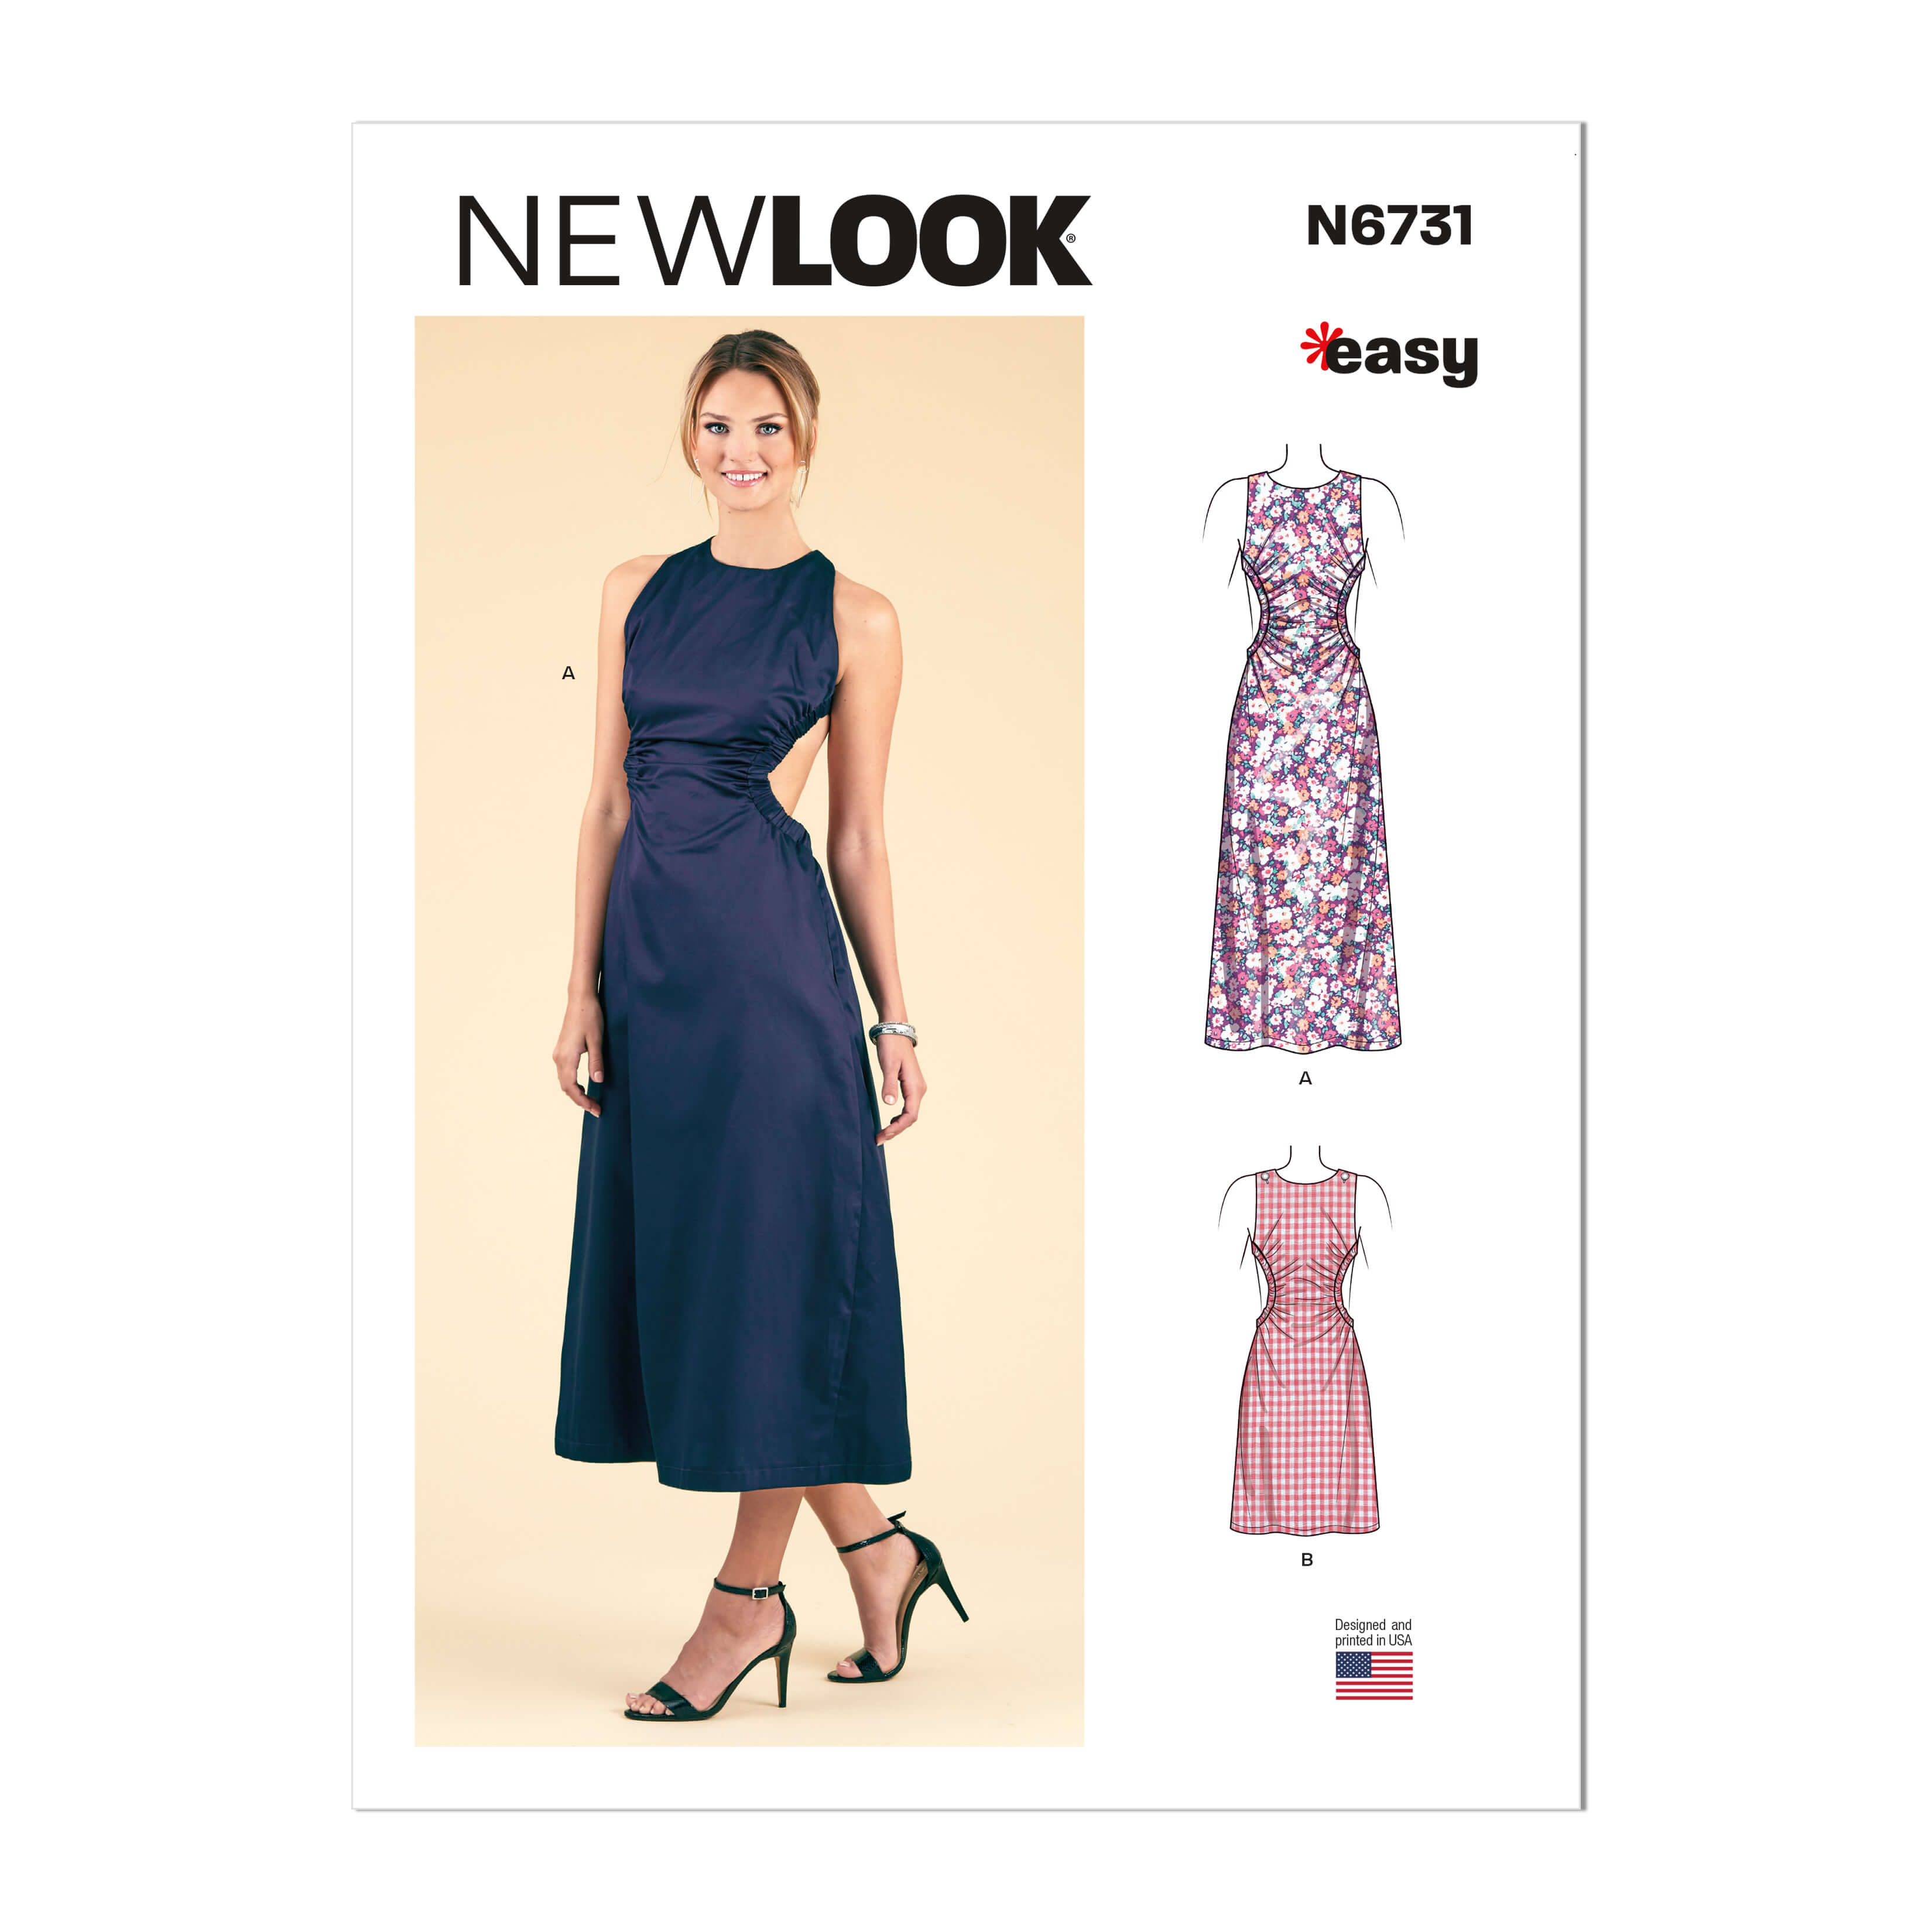 New Look Sewing Pattern N6731 Misses' Dresses